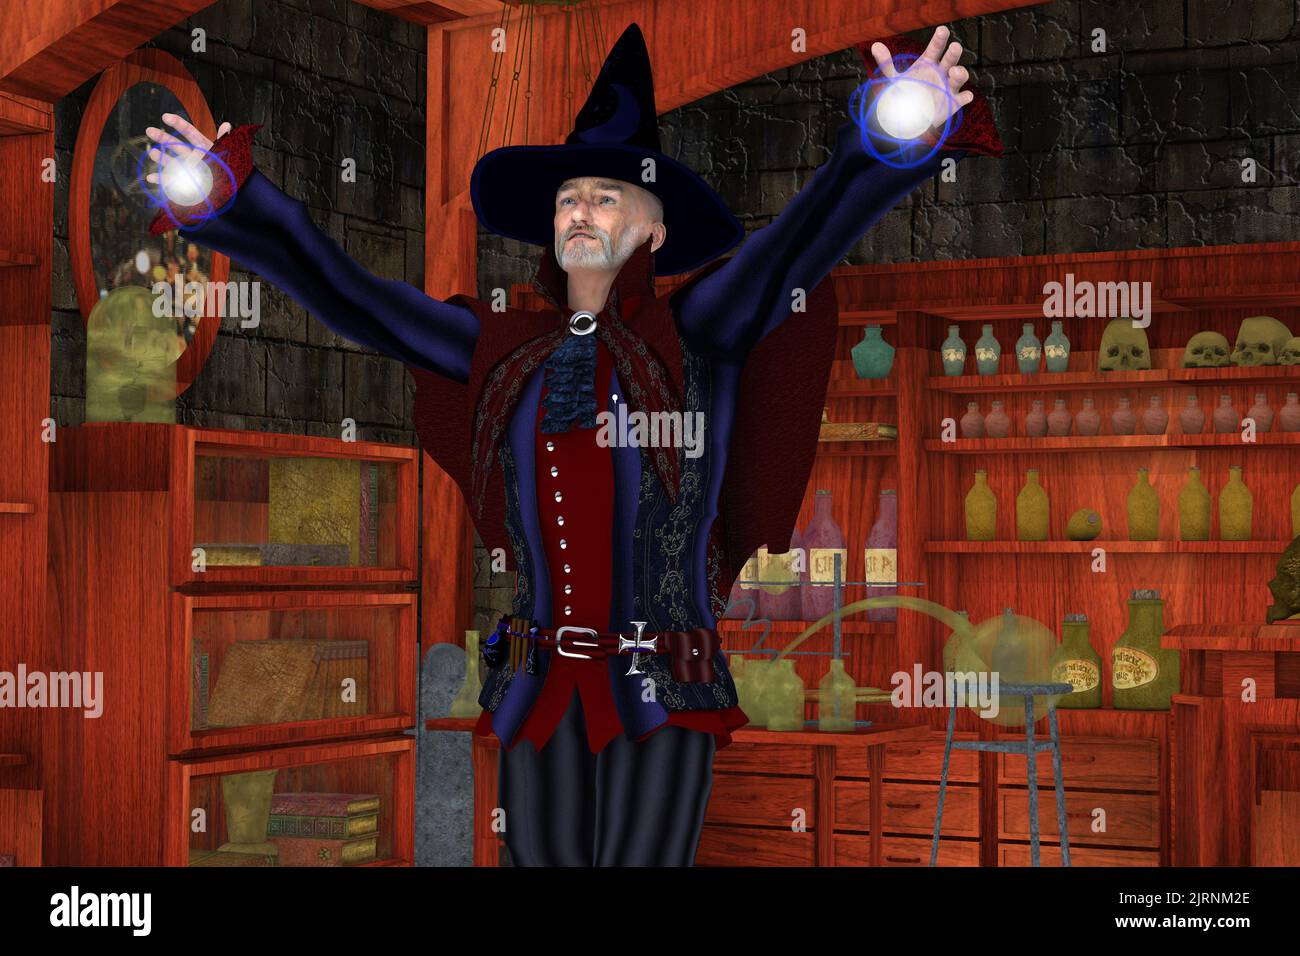 Magic Wizard with Orbs - Un colorido mago manipula dos brillantes orbes en lanzar un hechizo en su laboratorio lleno de pociones mágicas. Foto de stock